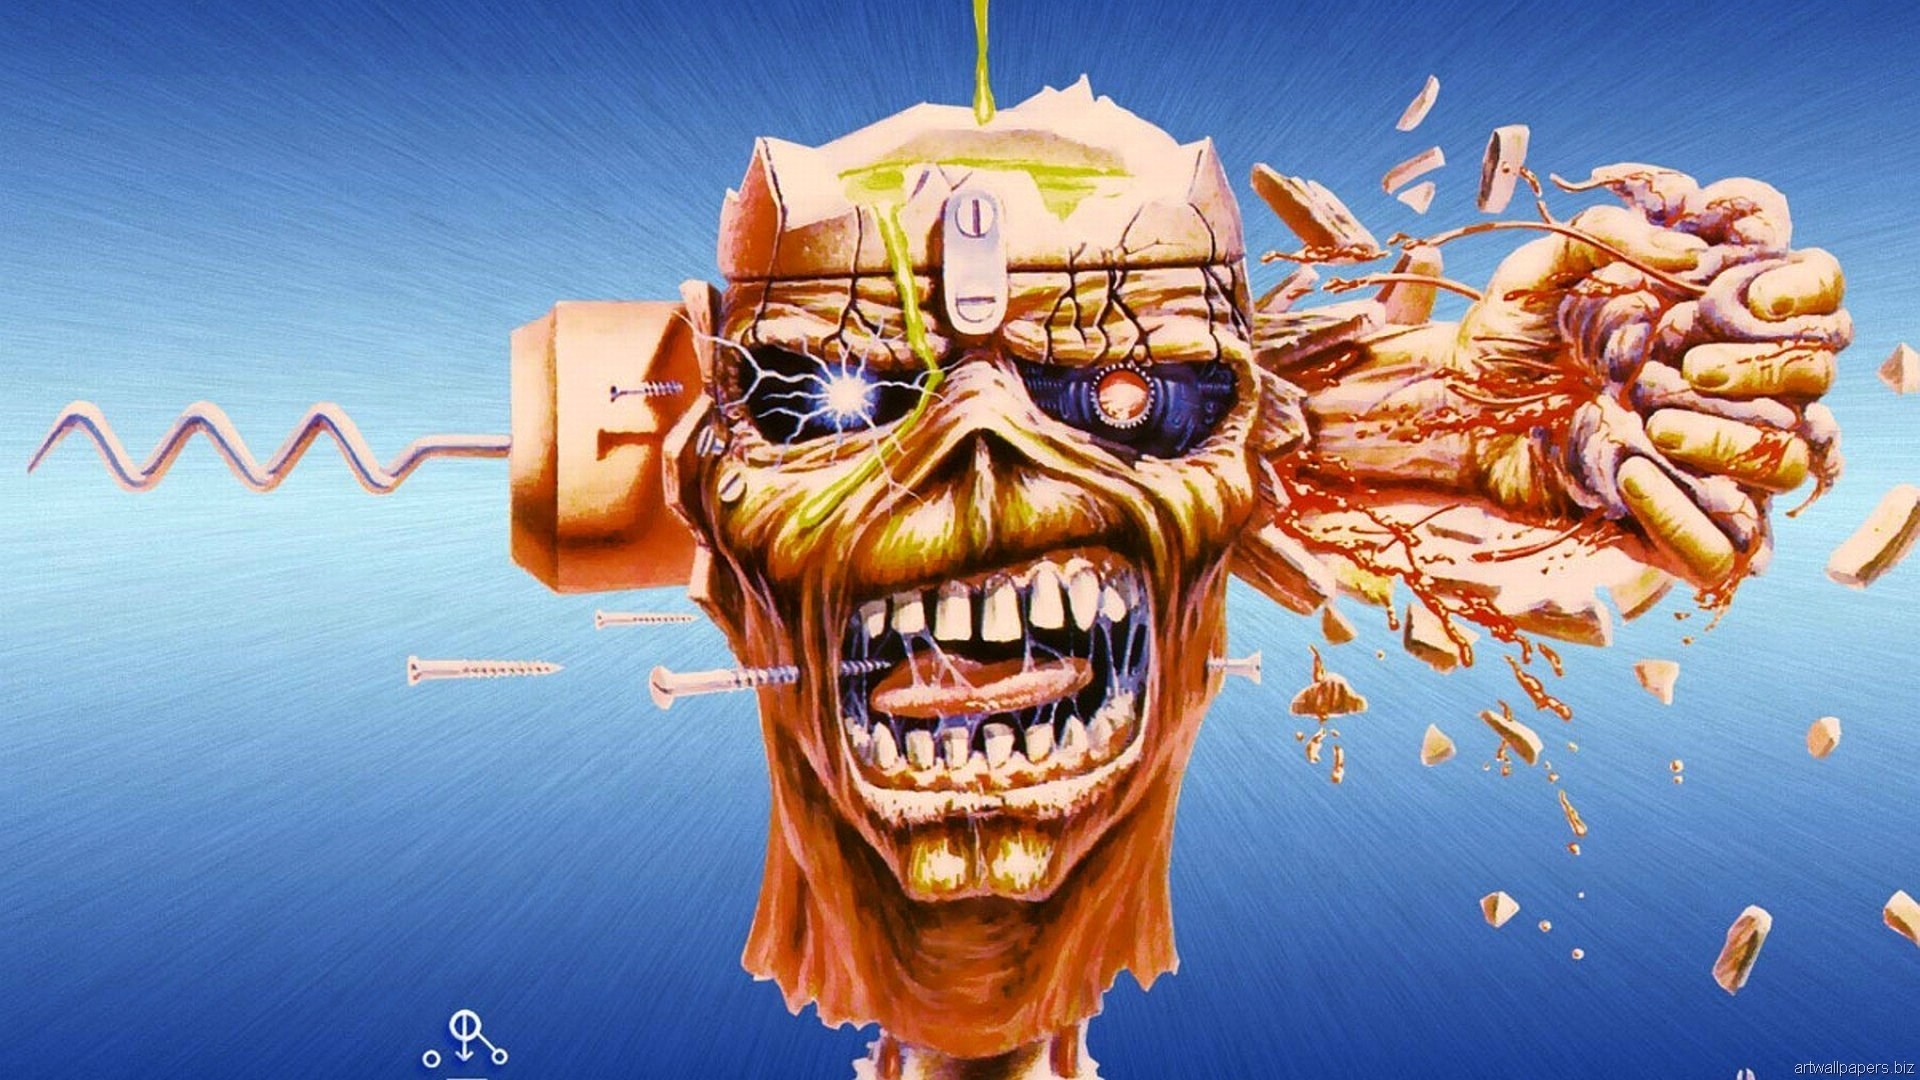 1920x1080 Iron Maiden Eddie the Head 1080p HD Wallpaper Background